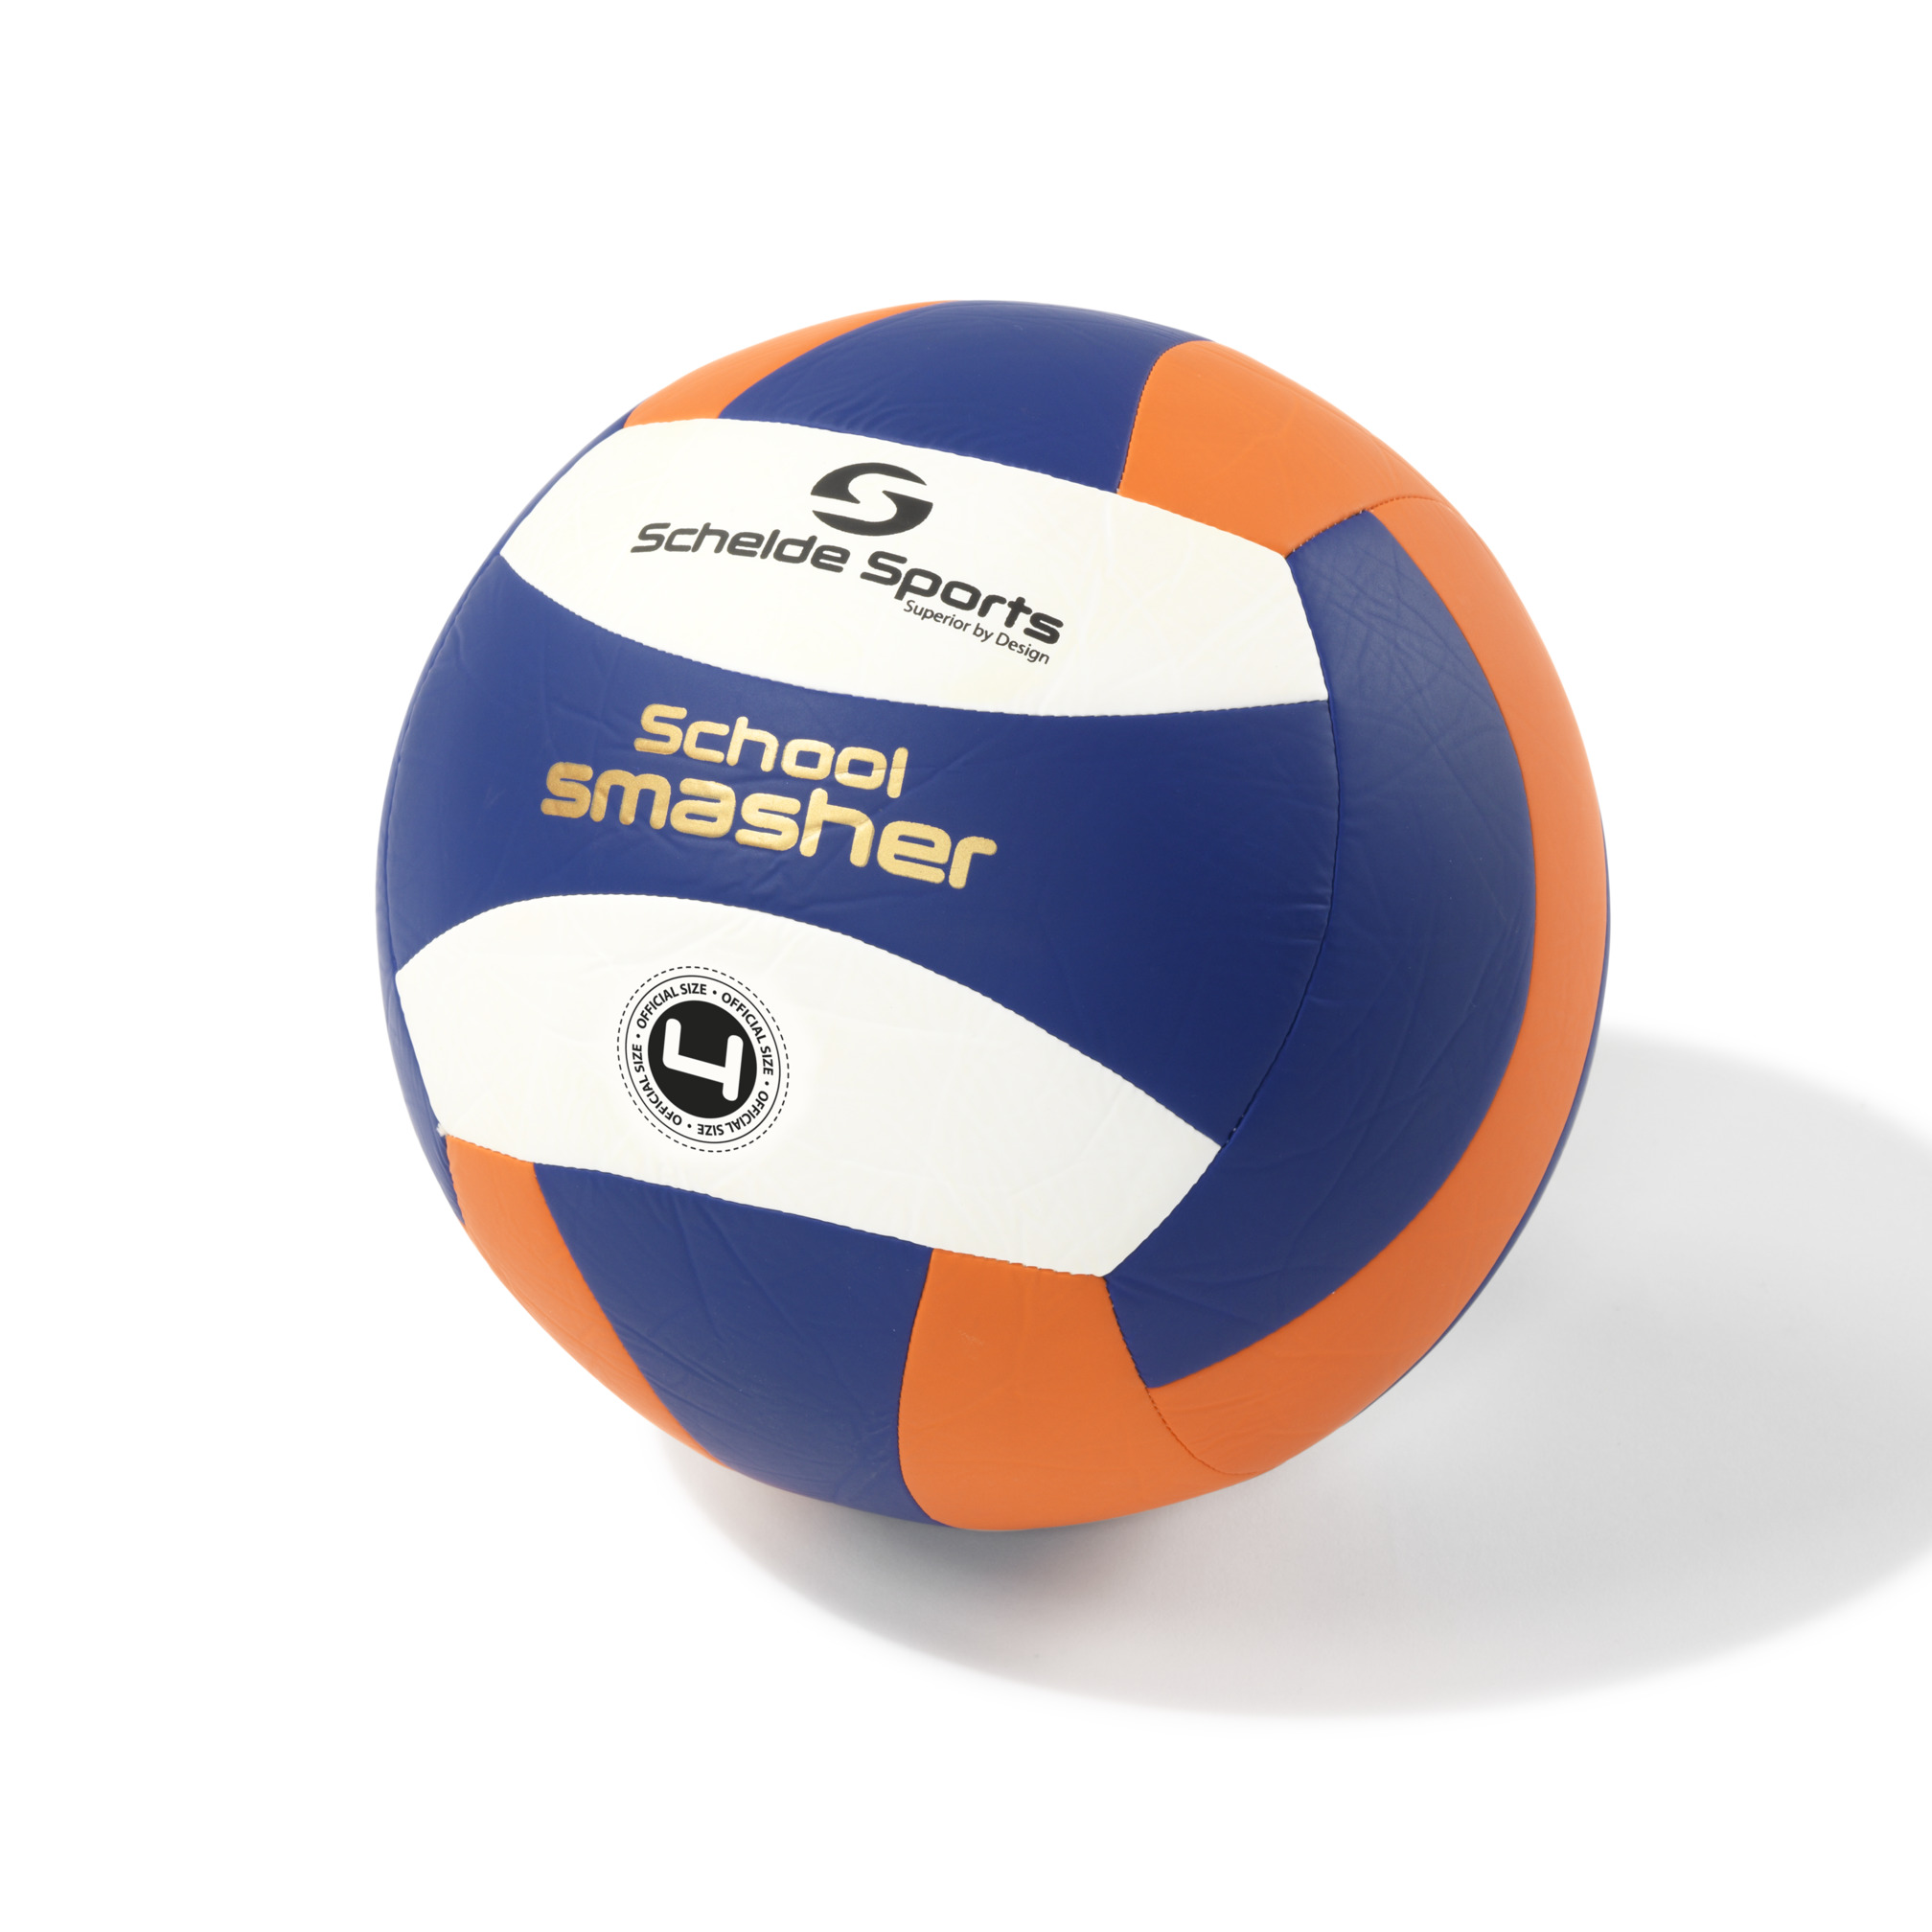 Schelde Sports Volleyball School Smasher, size 4